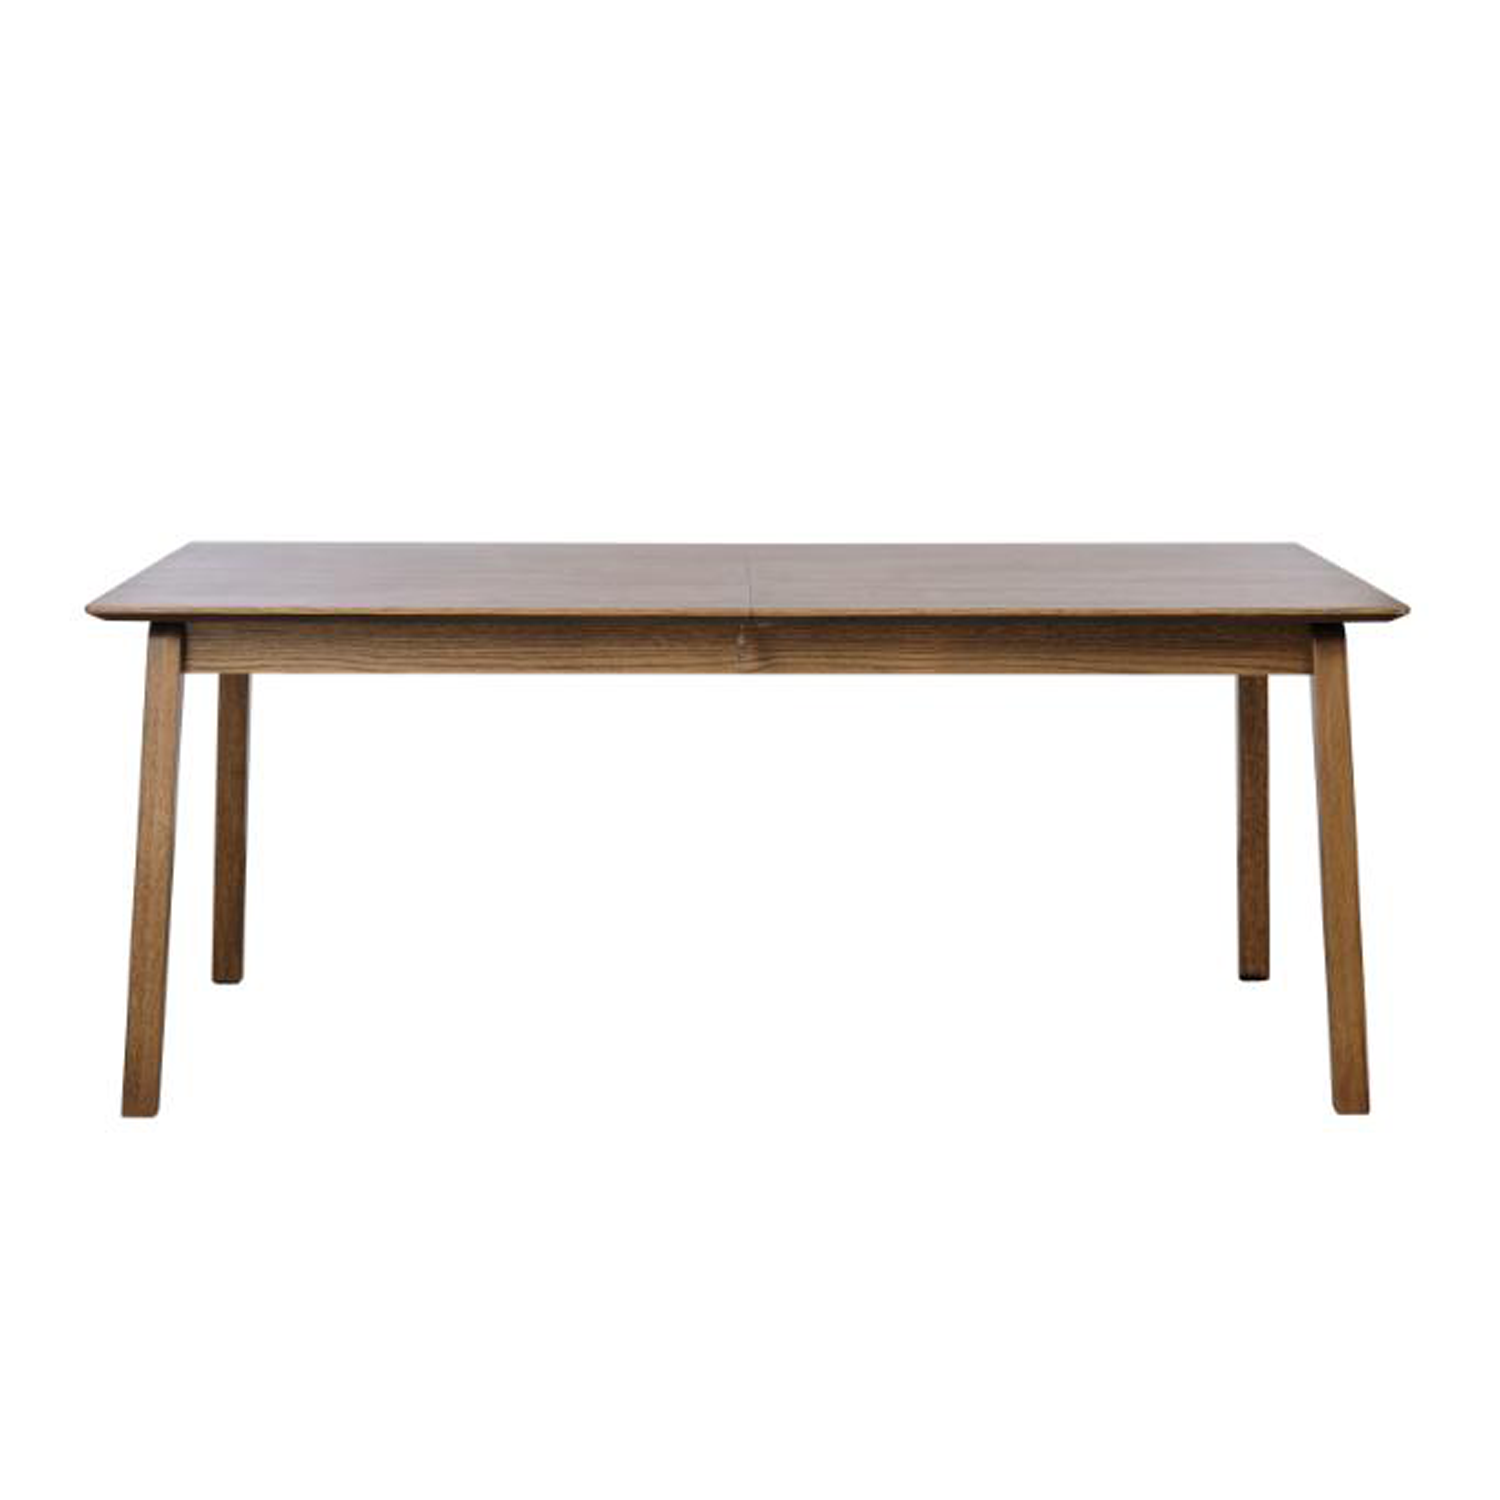 Uitschuifbare tafel Bari Smoked oak 190-290 cm